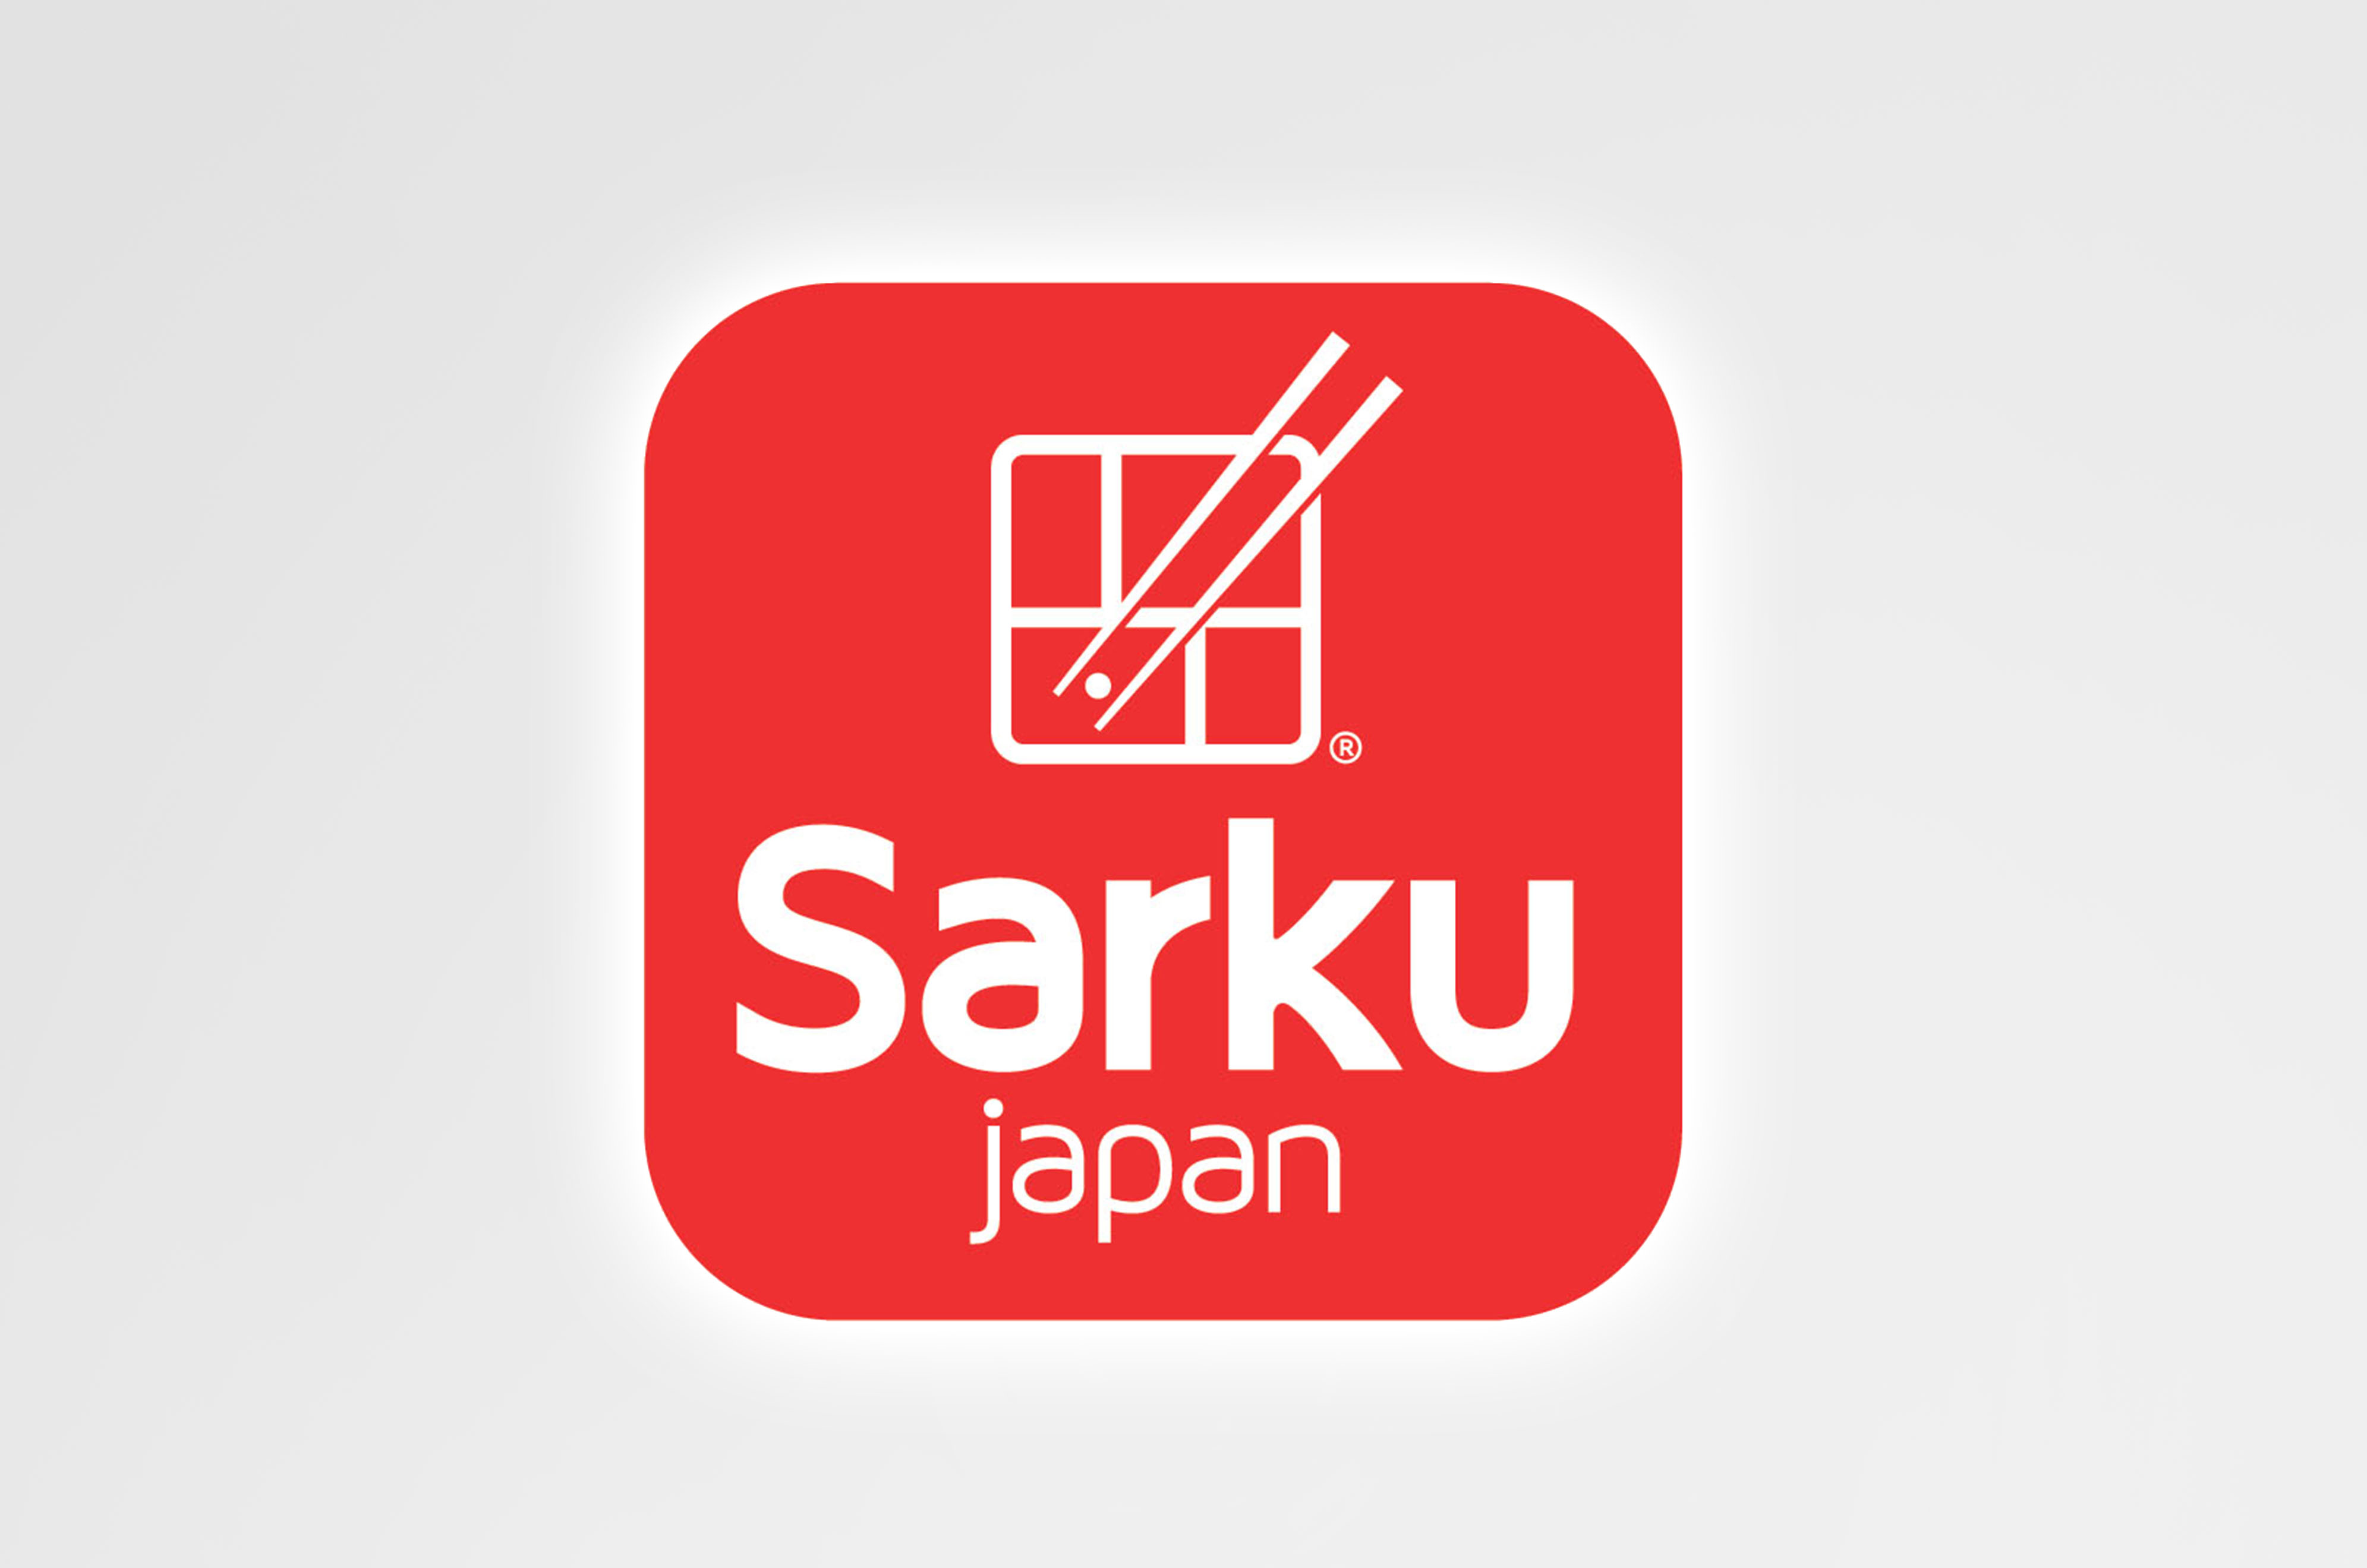 Sarku Japan Logo Click to download